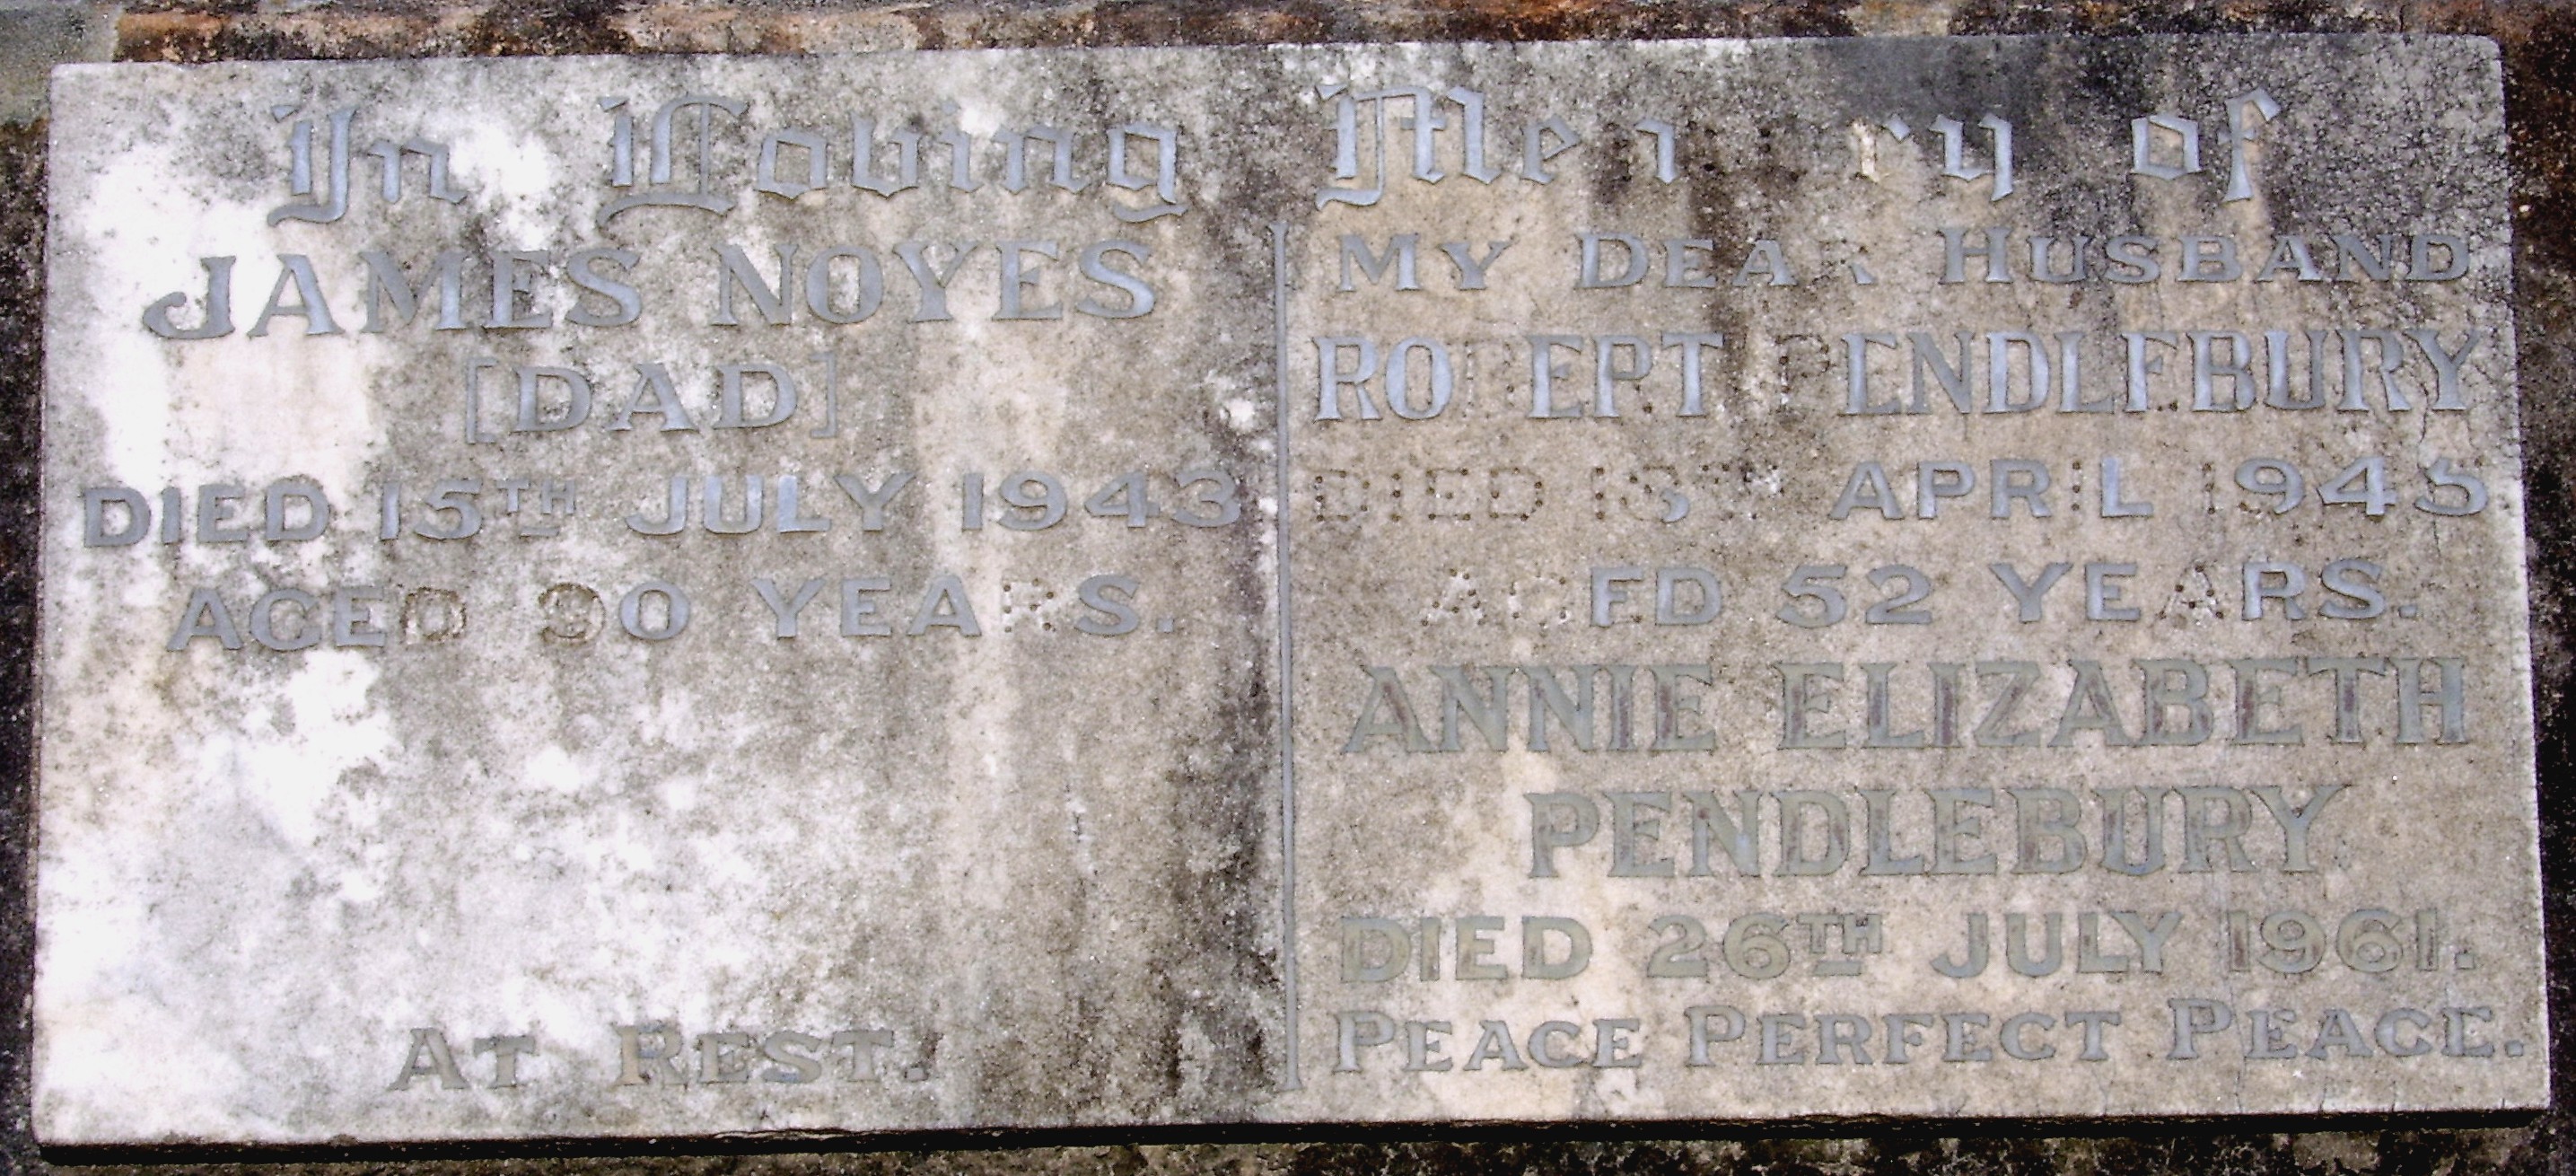 The grave of James (Davis) Noyes, Robert Pendlebury and Annie Elizabeth Pendlebury (neé Noyes)